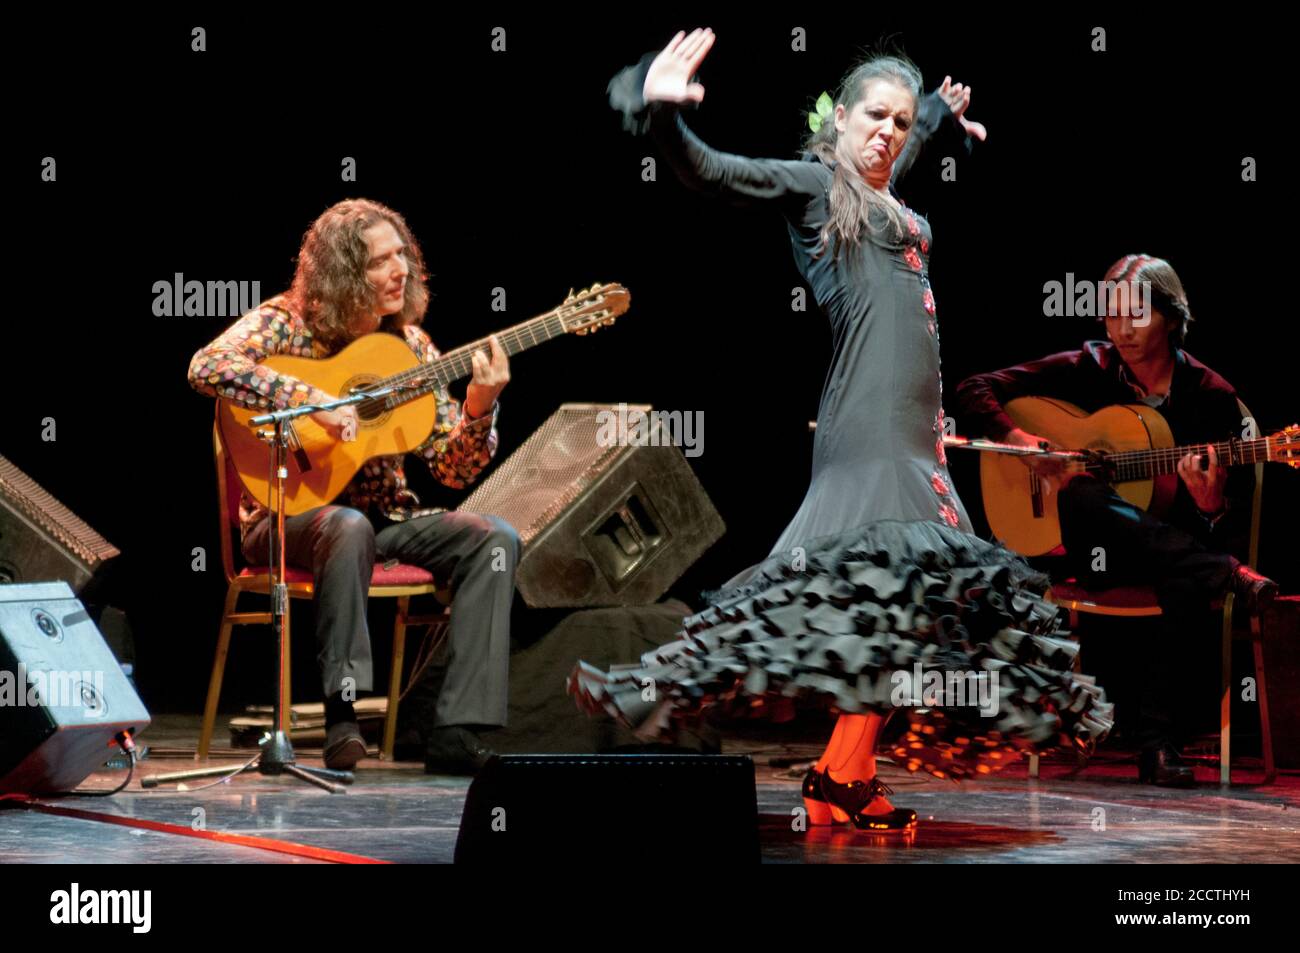 Tomatito, guitariste espagnol de flamenco, avec danseuse sur scène Banque D'Images